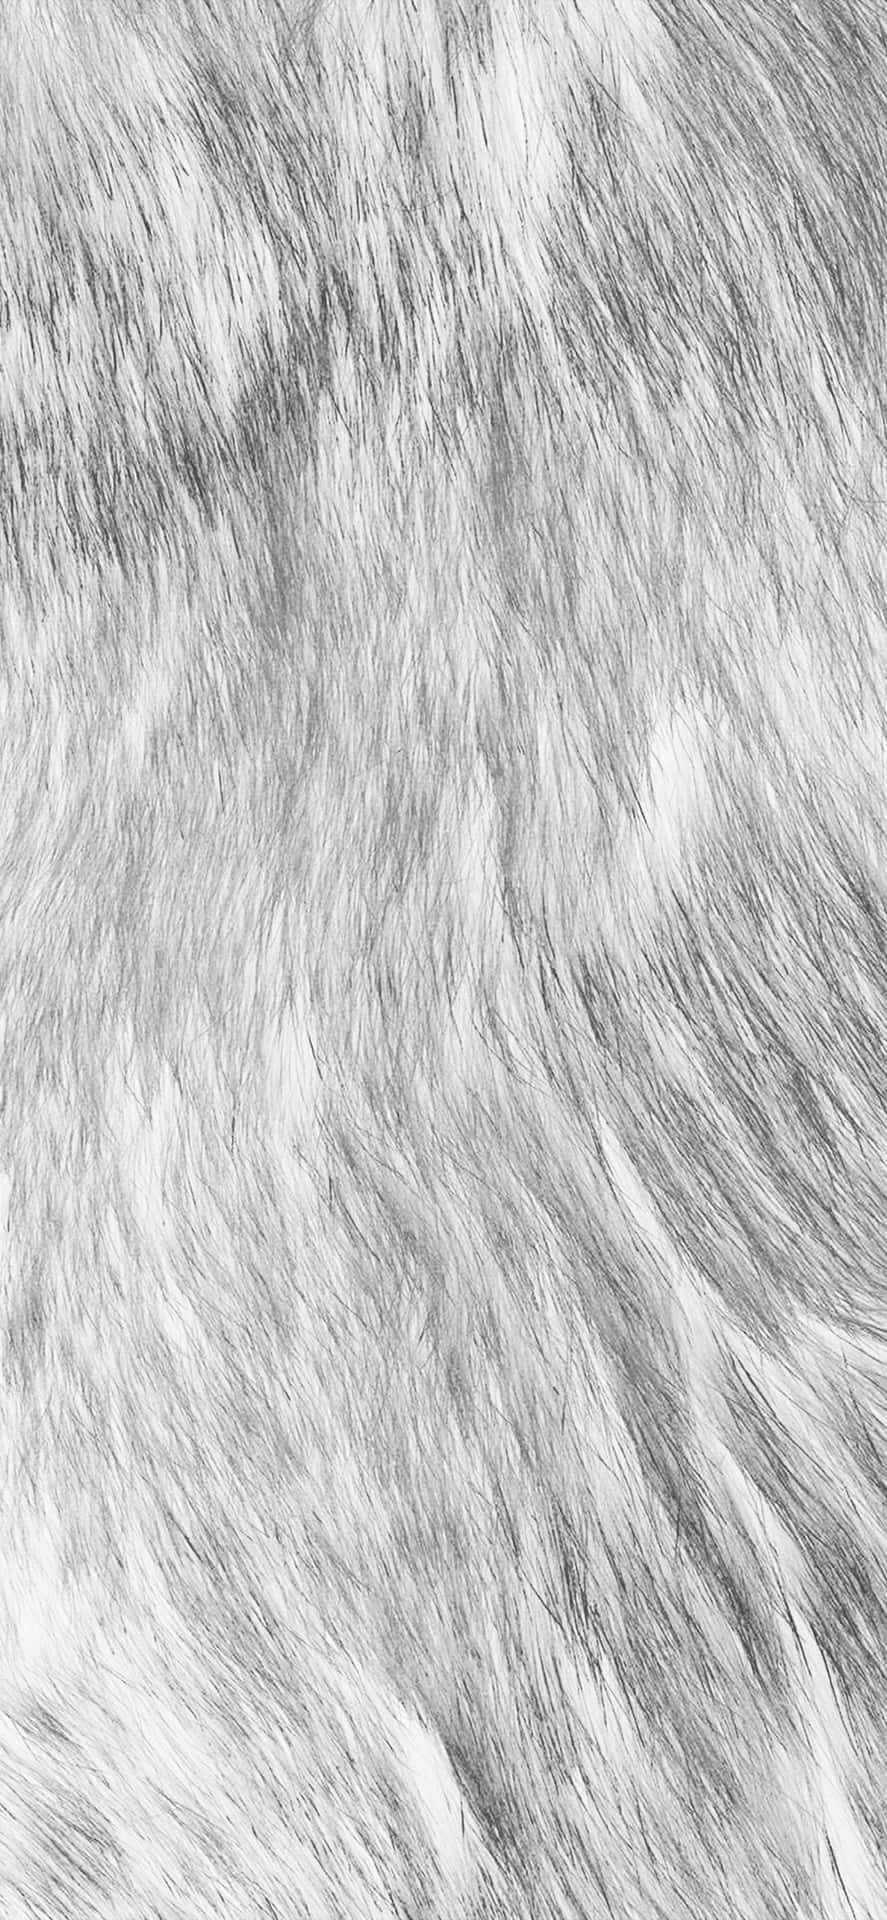 Faux Fur Texture Closeup Wallpaper